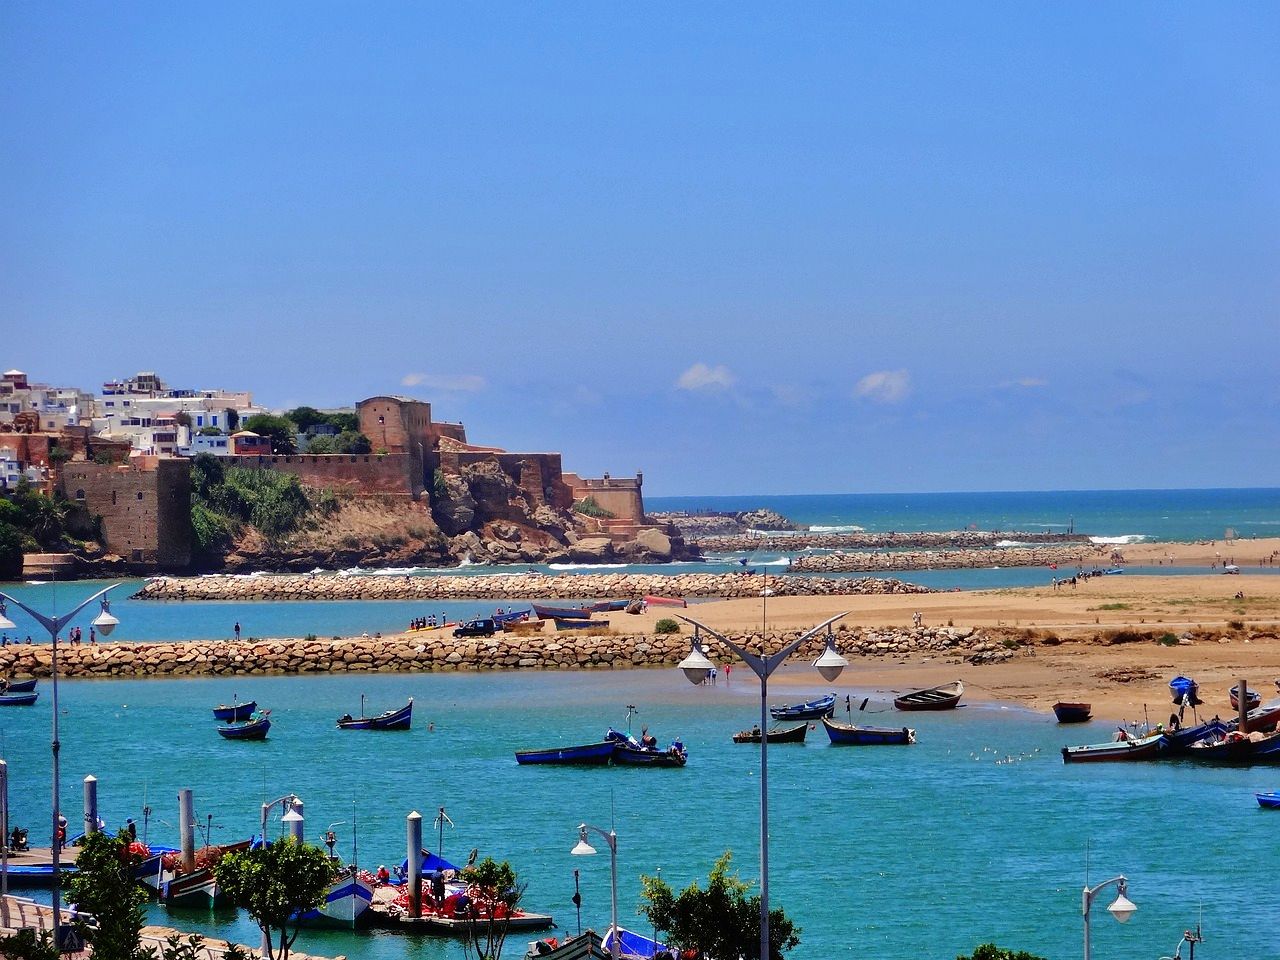 Rabat, capital of Morocco